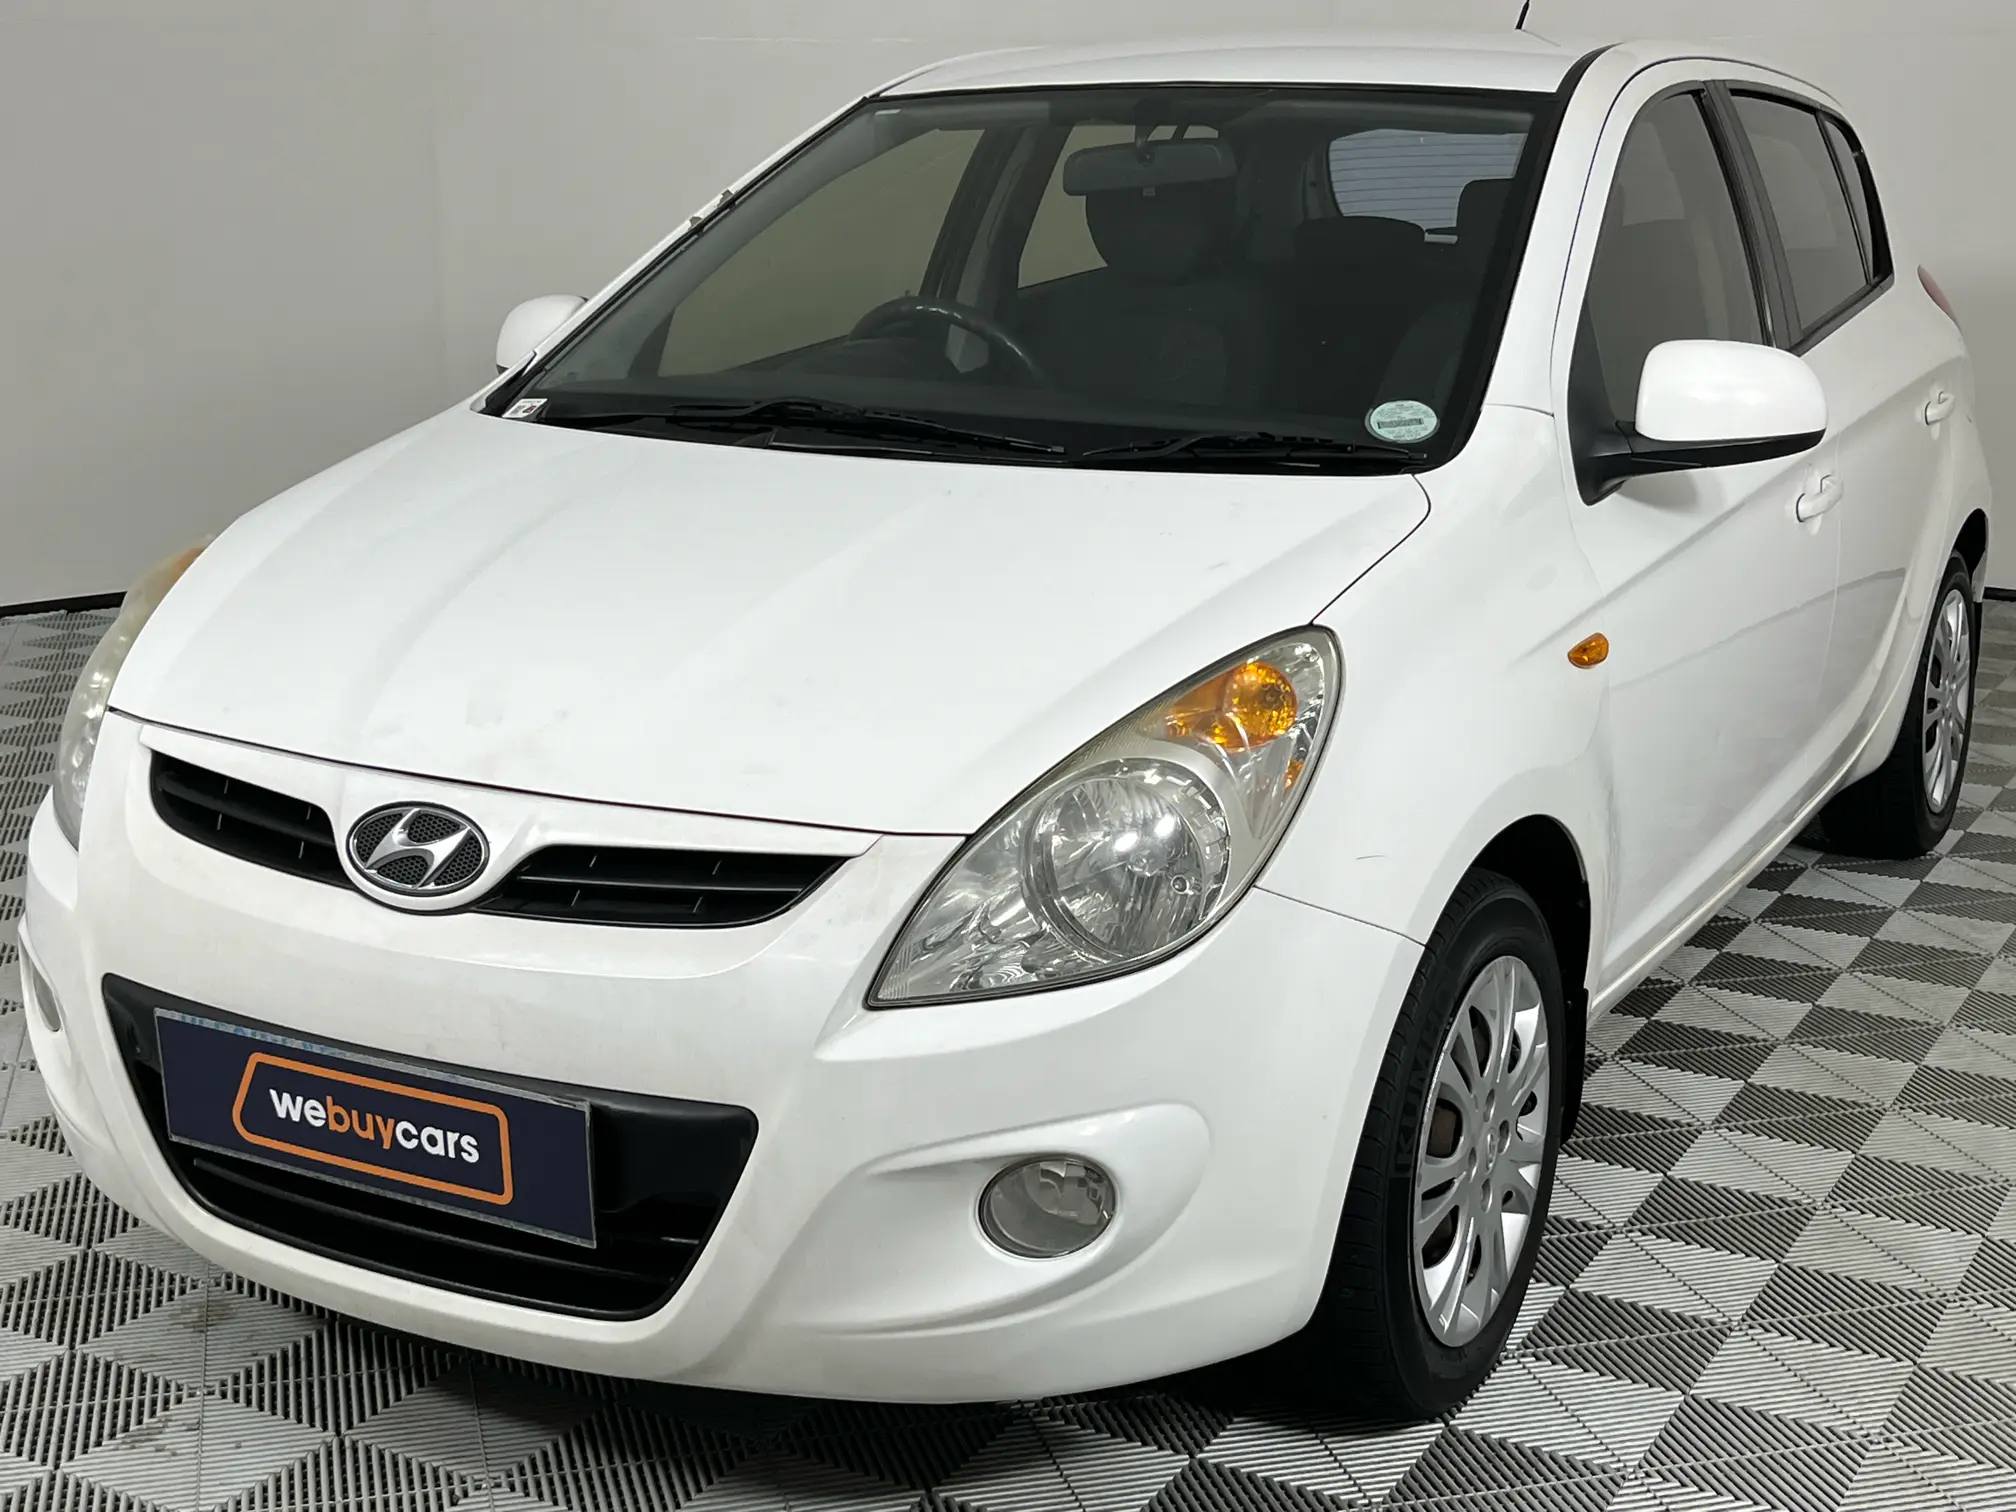 2011 Hyundai i20 1.4